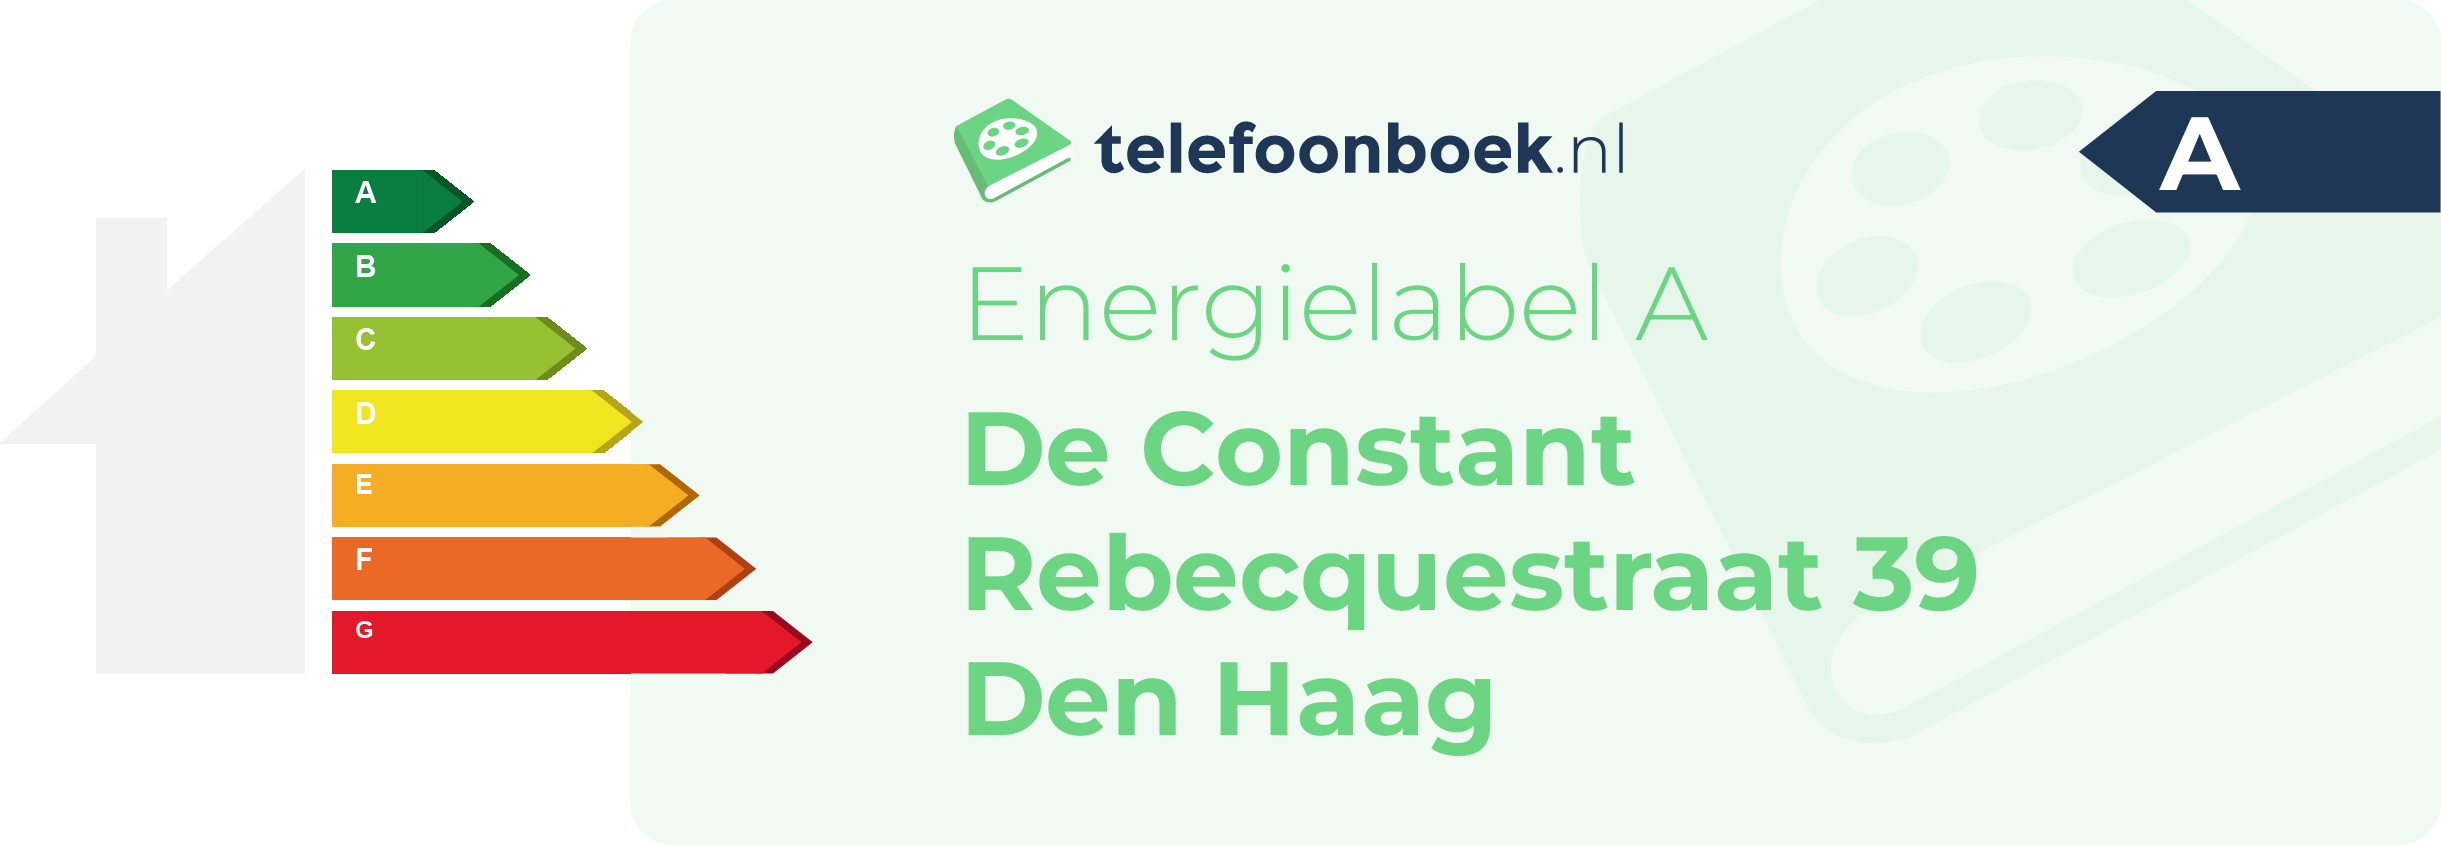 Energielabel De Constant Rebecquestraat 39 Den Haag